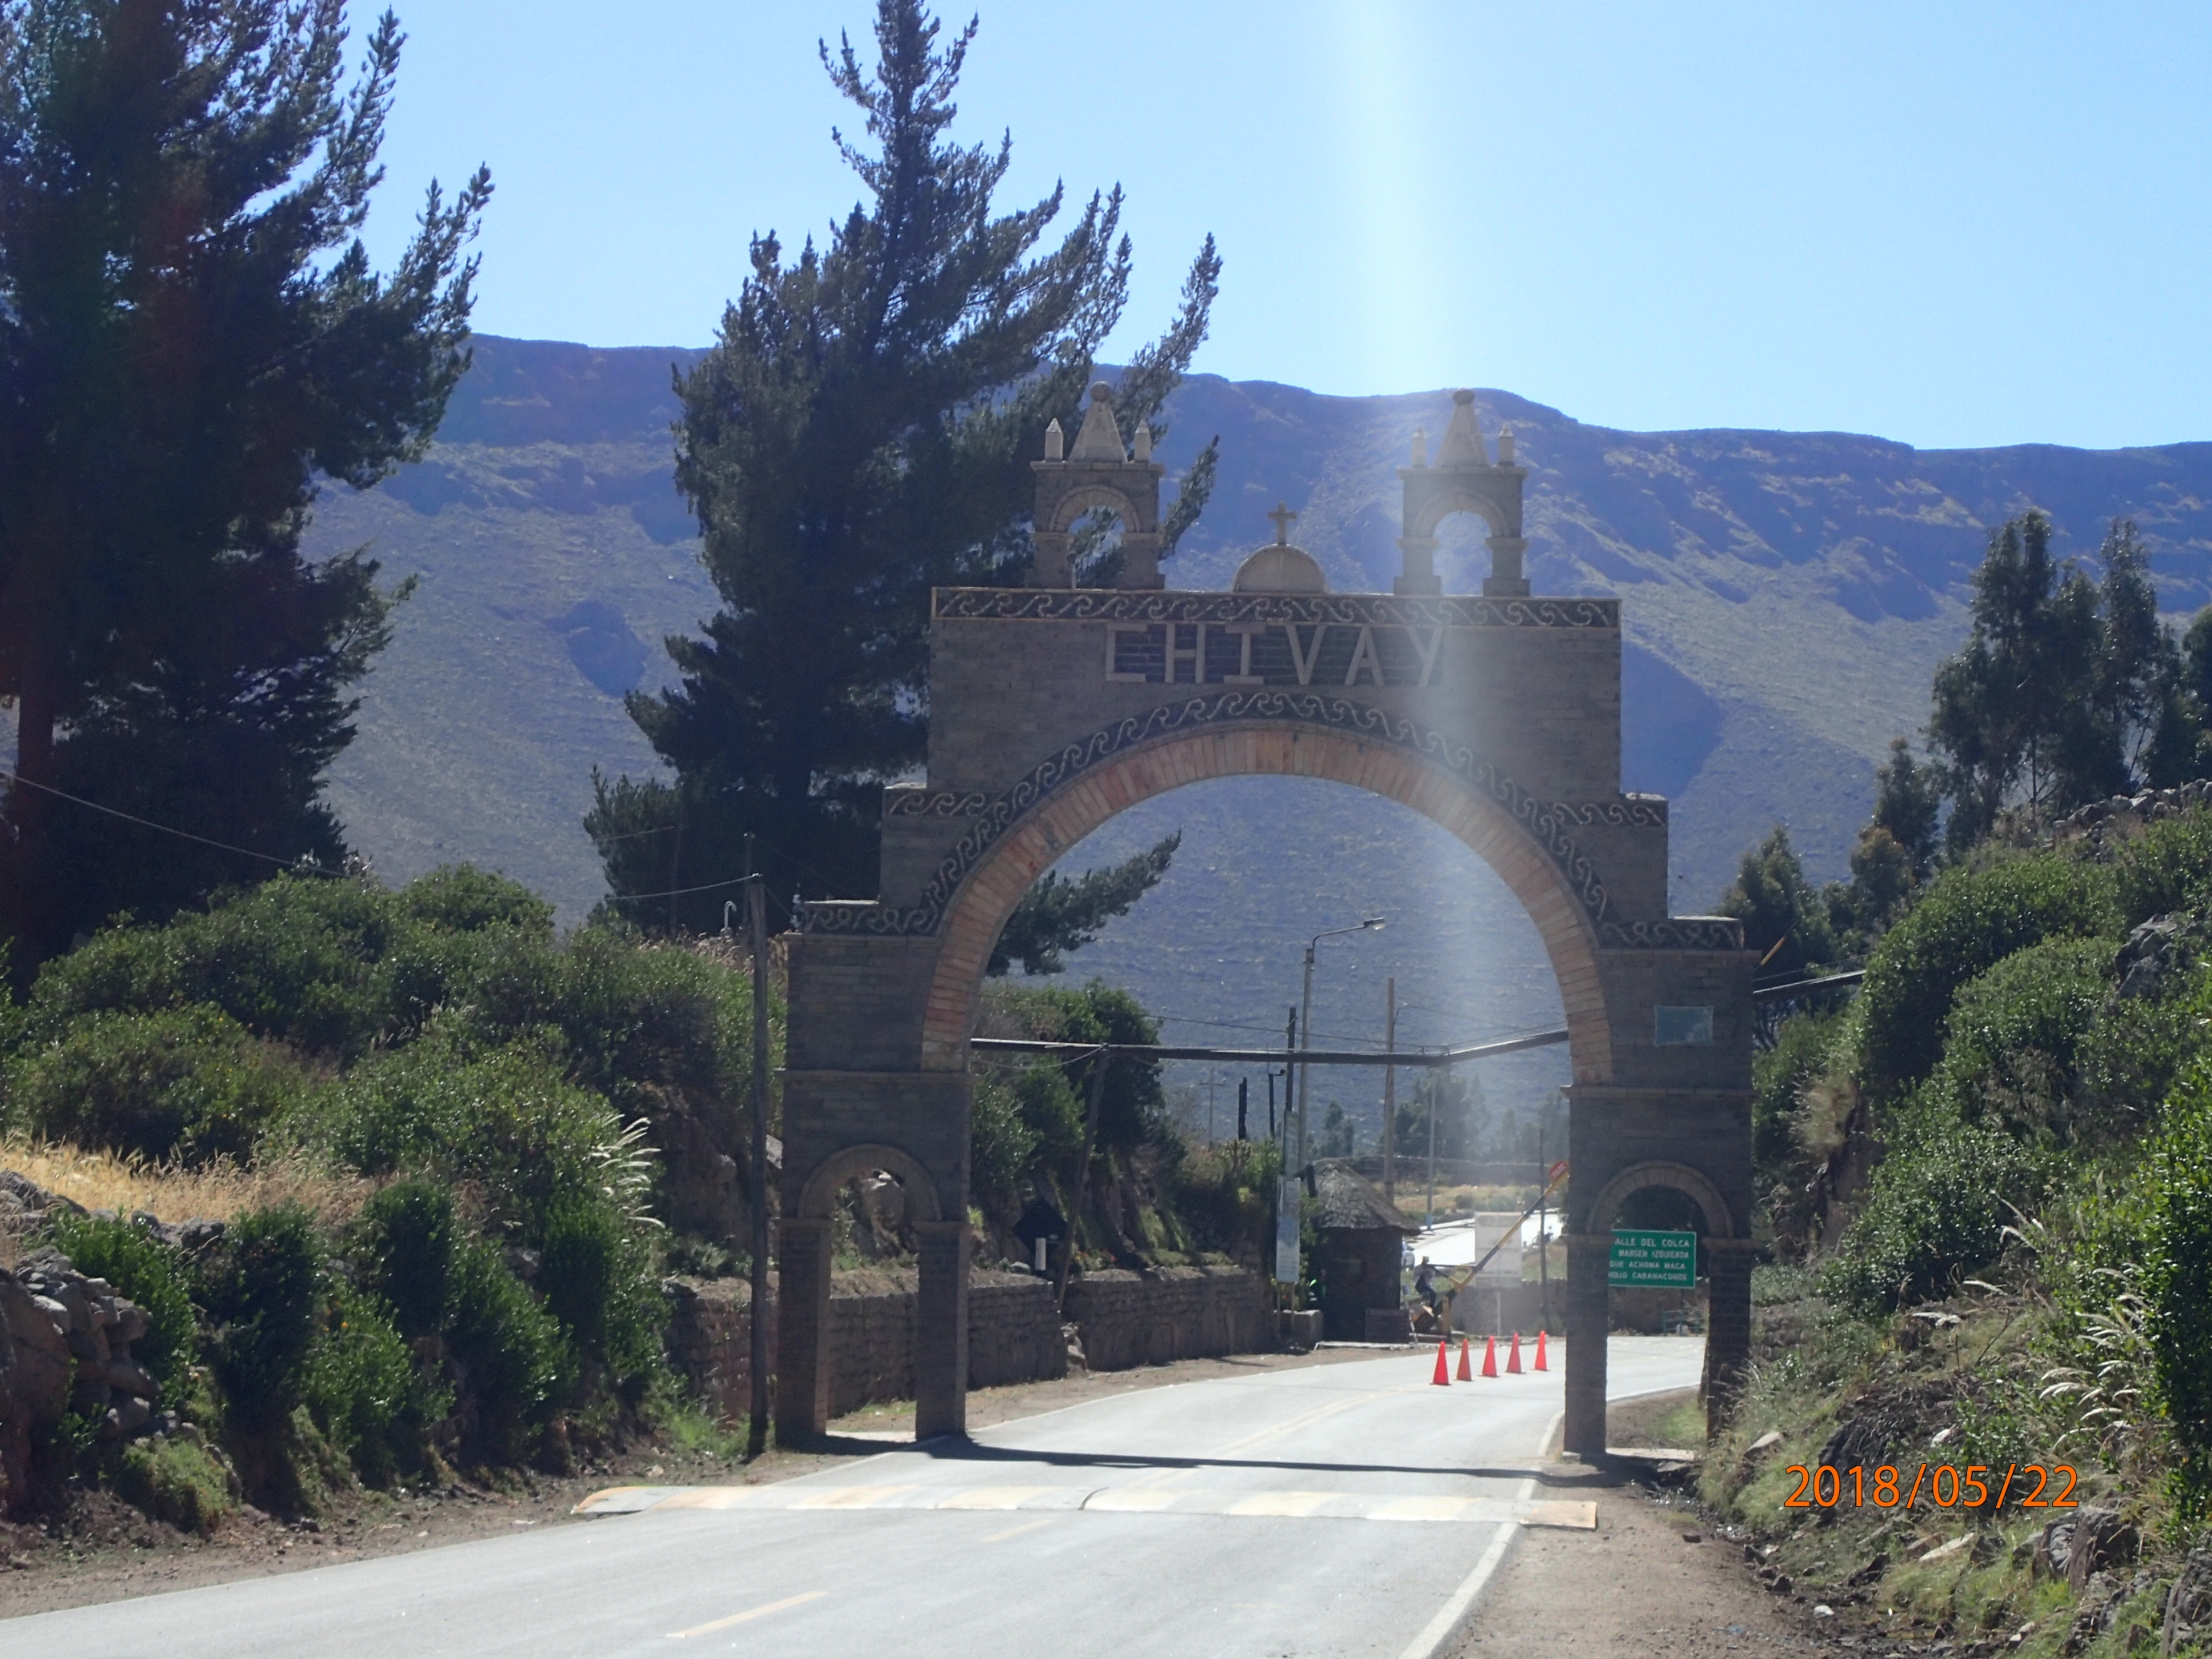 Ilyen kapuk vannak a falvak bejáratánál. Ez Chivay kapuja.